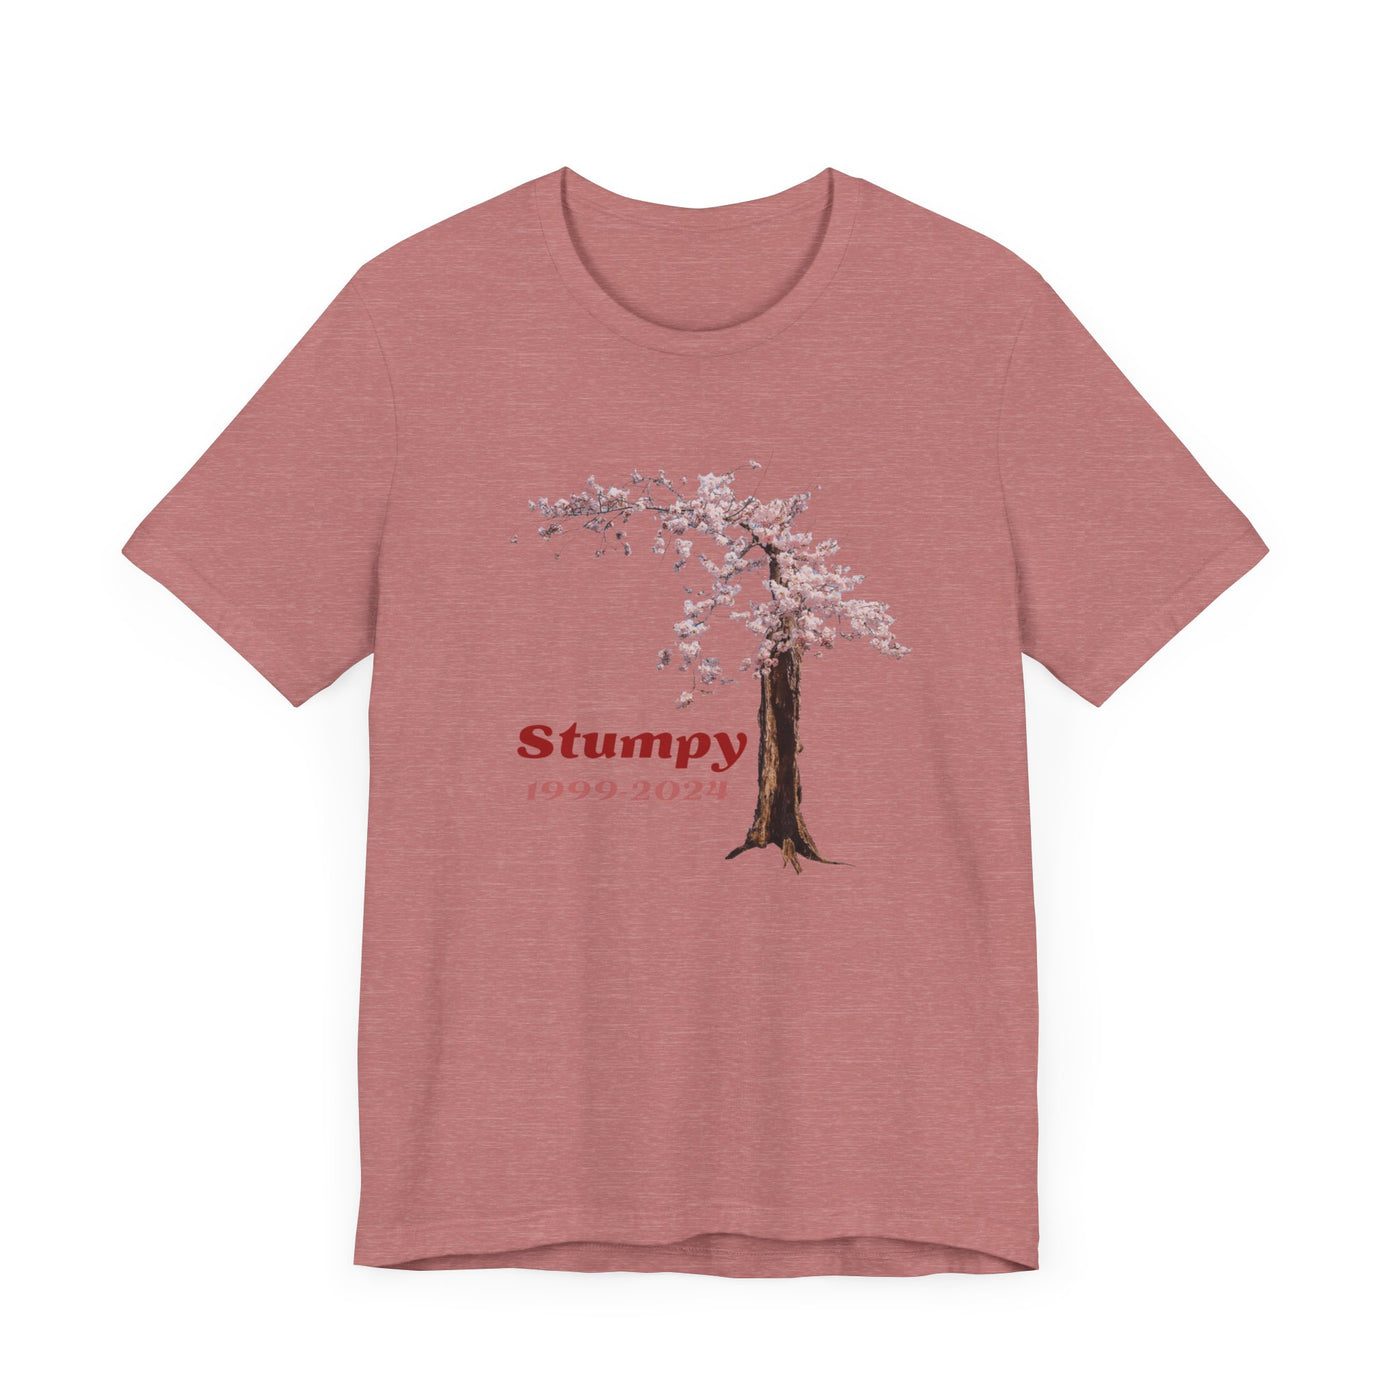 Stumpy 1999-2024 - Unisex Jersey Short Sleeve Tee